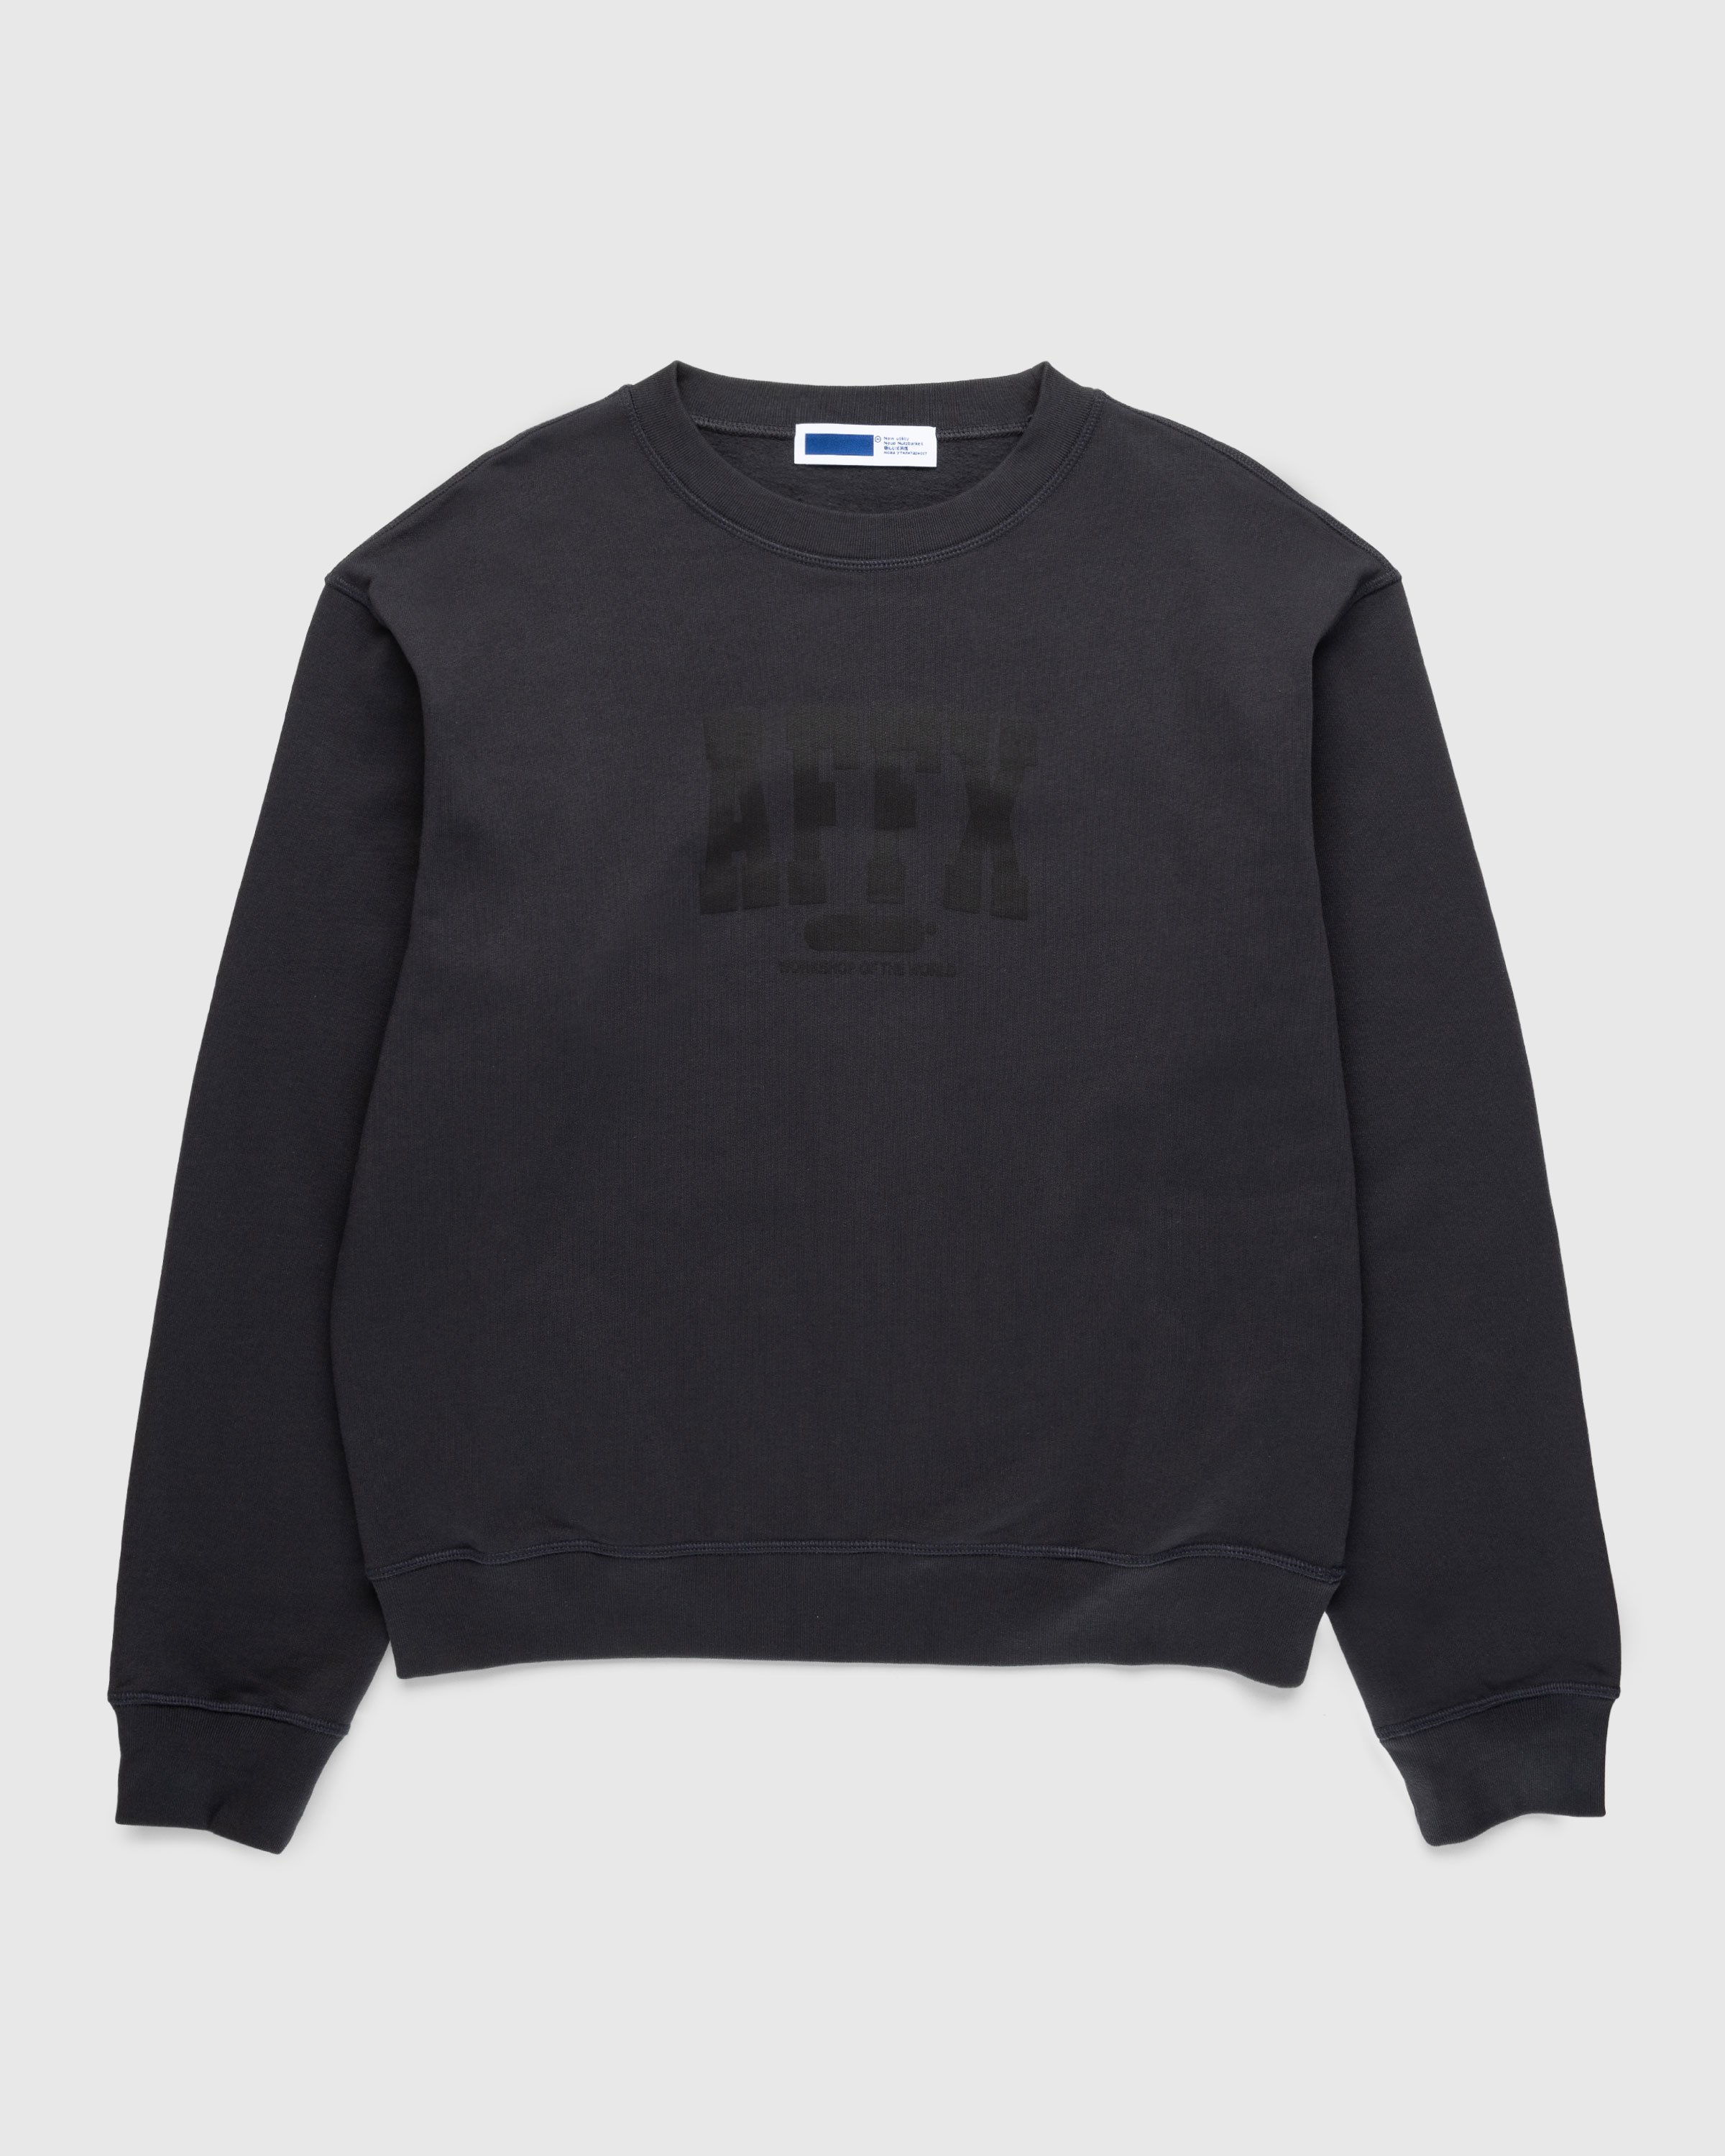 AFFXWRKS - Varsity Sweatshirt Soft Black - Clothing - Black - Image 1